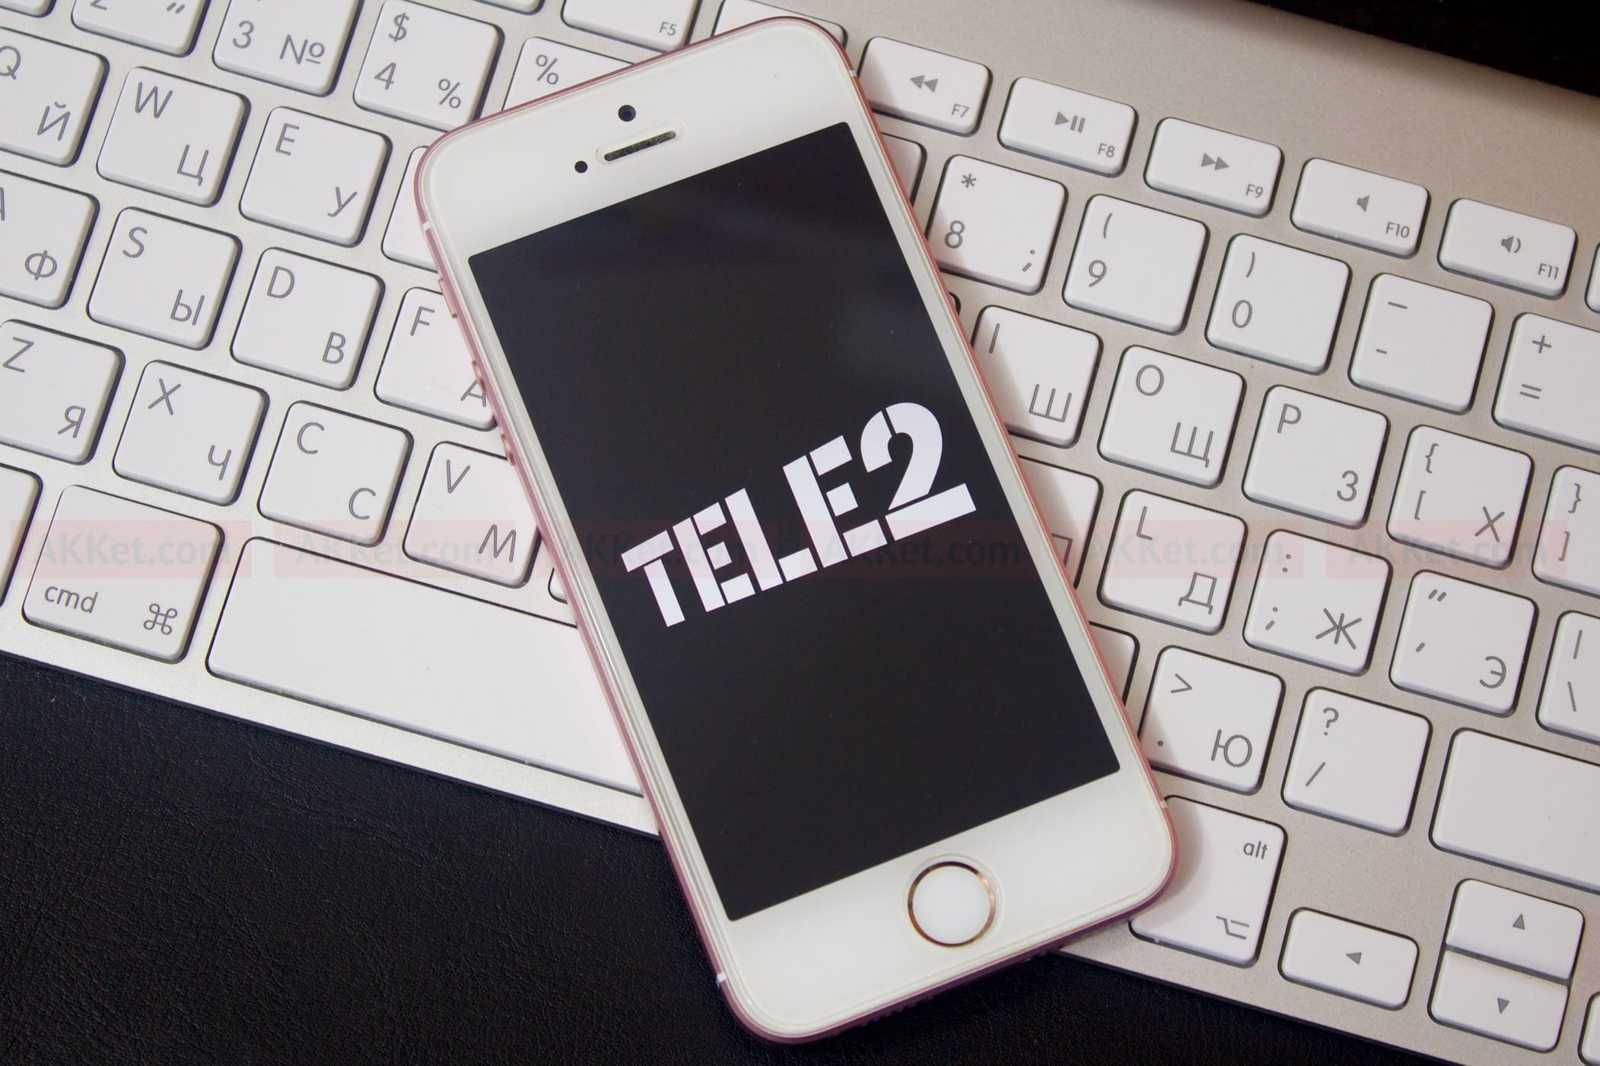 Tele2 первой на российском телеком-рынке отвечает на вопросы в прямом эфире